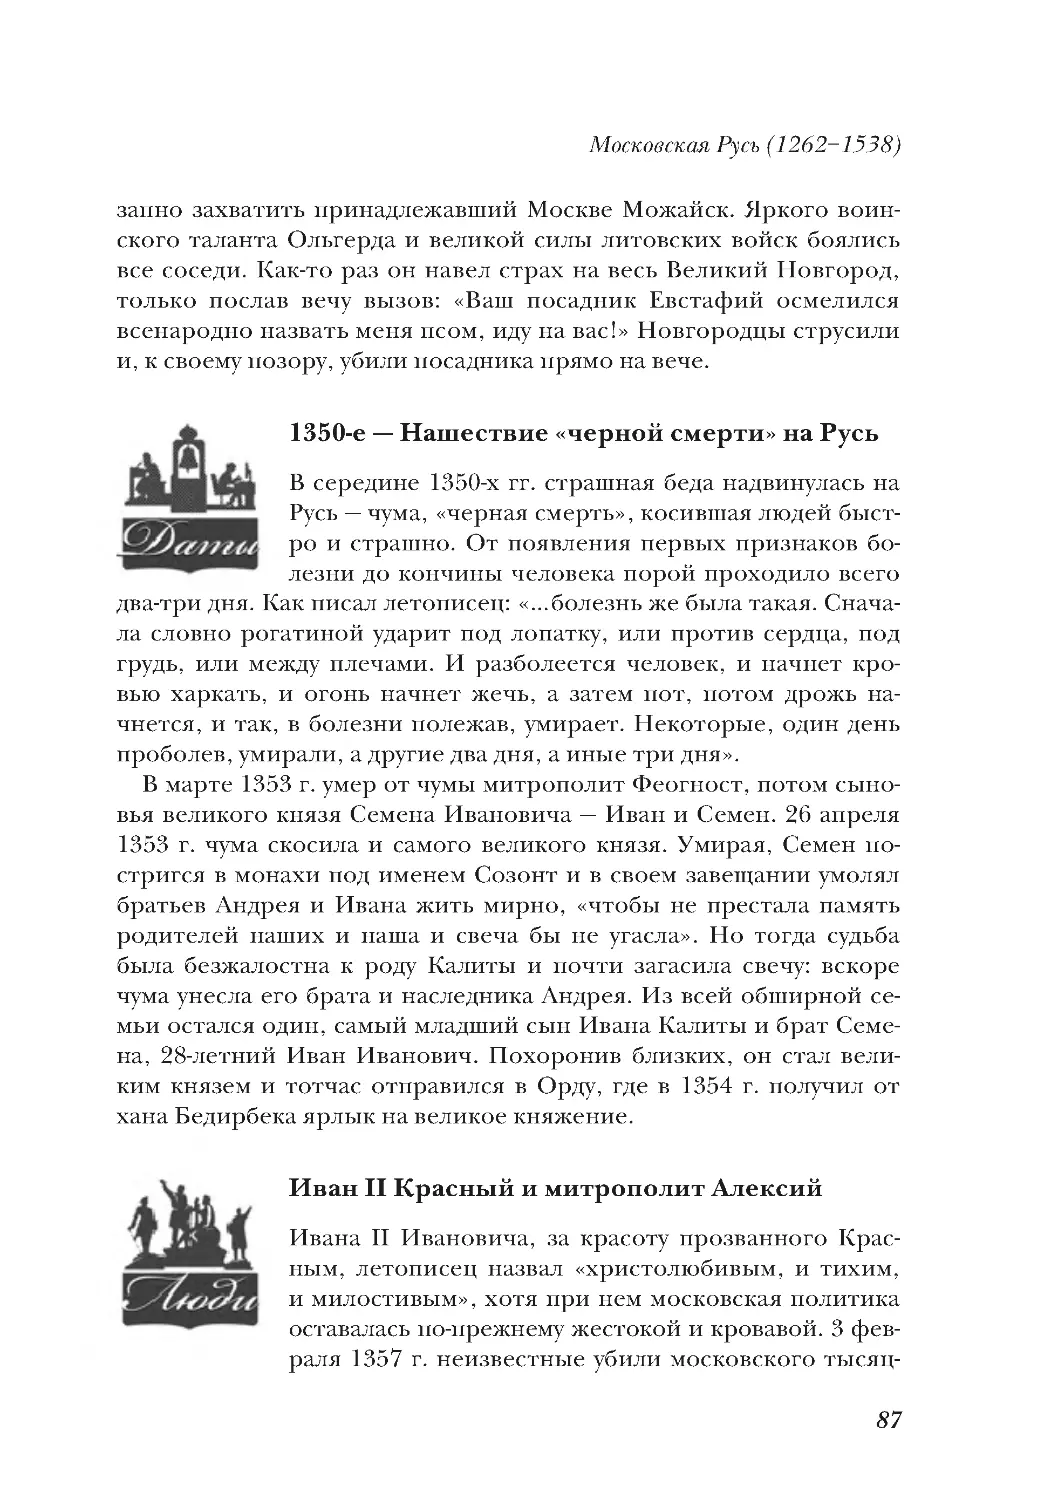 1350-е — Нашествие «черной смерти» на Русь
Иван II Красный и митрополит Алексий